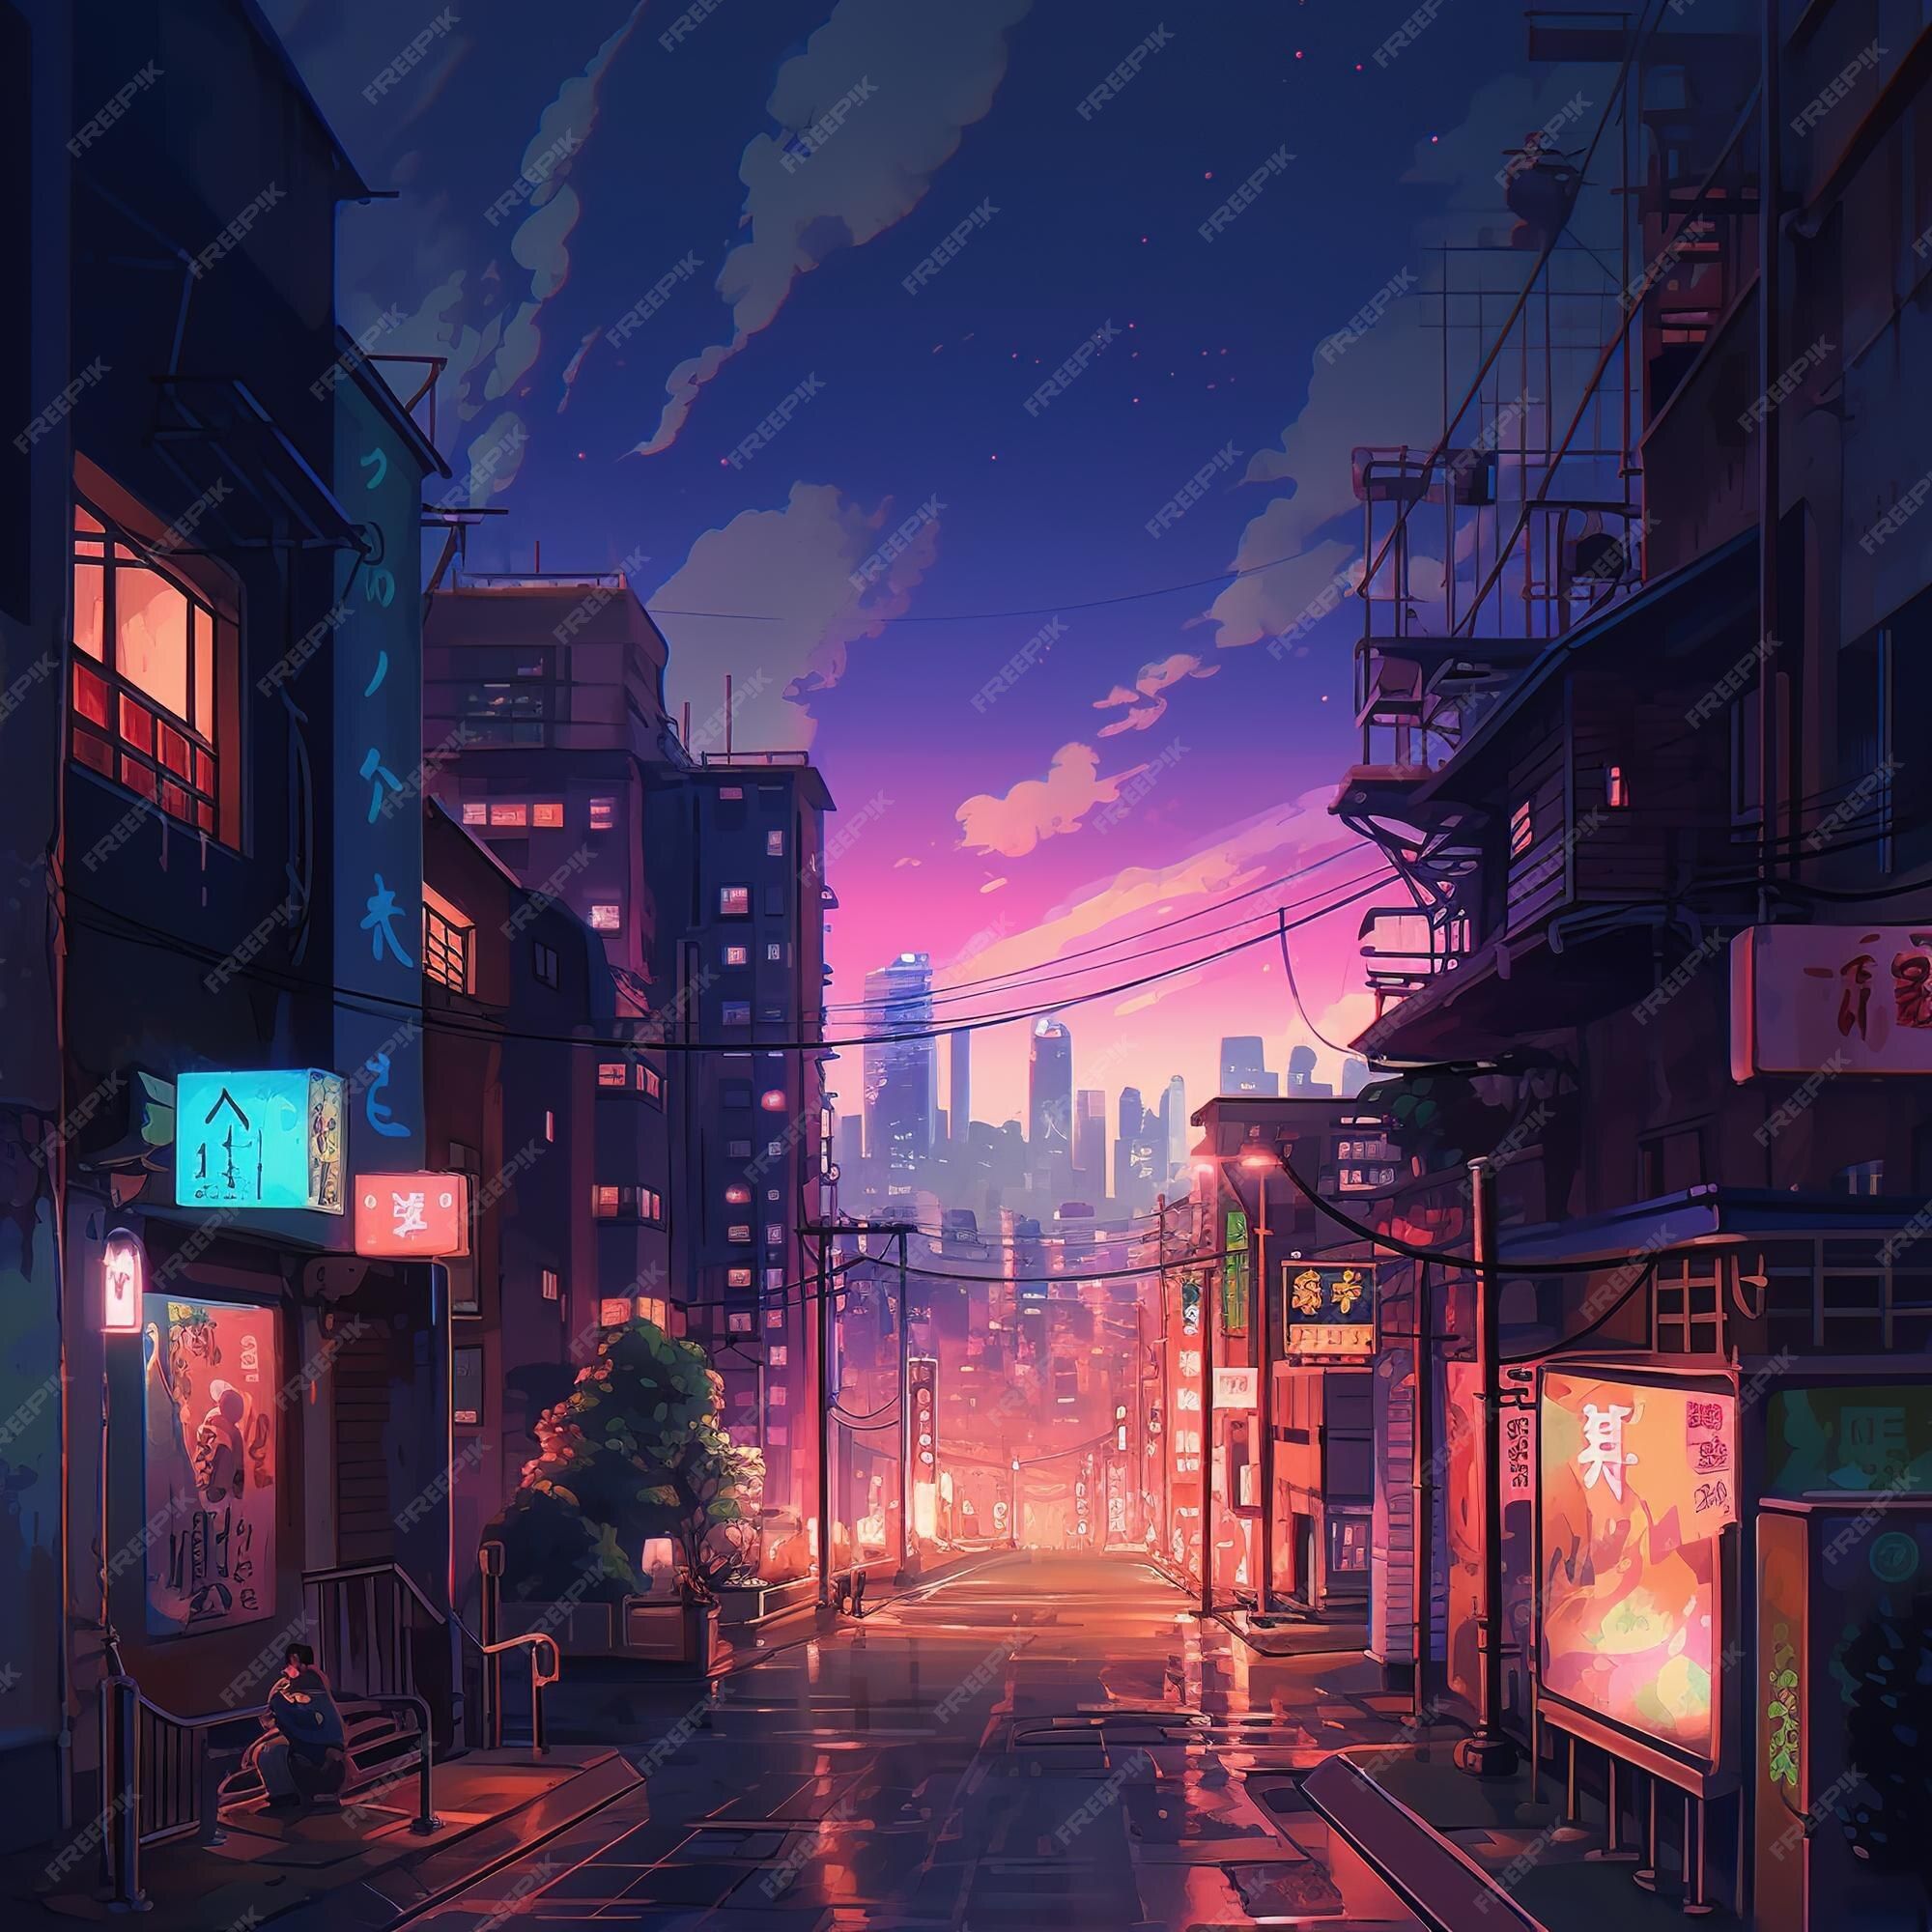 Anime City Background Image